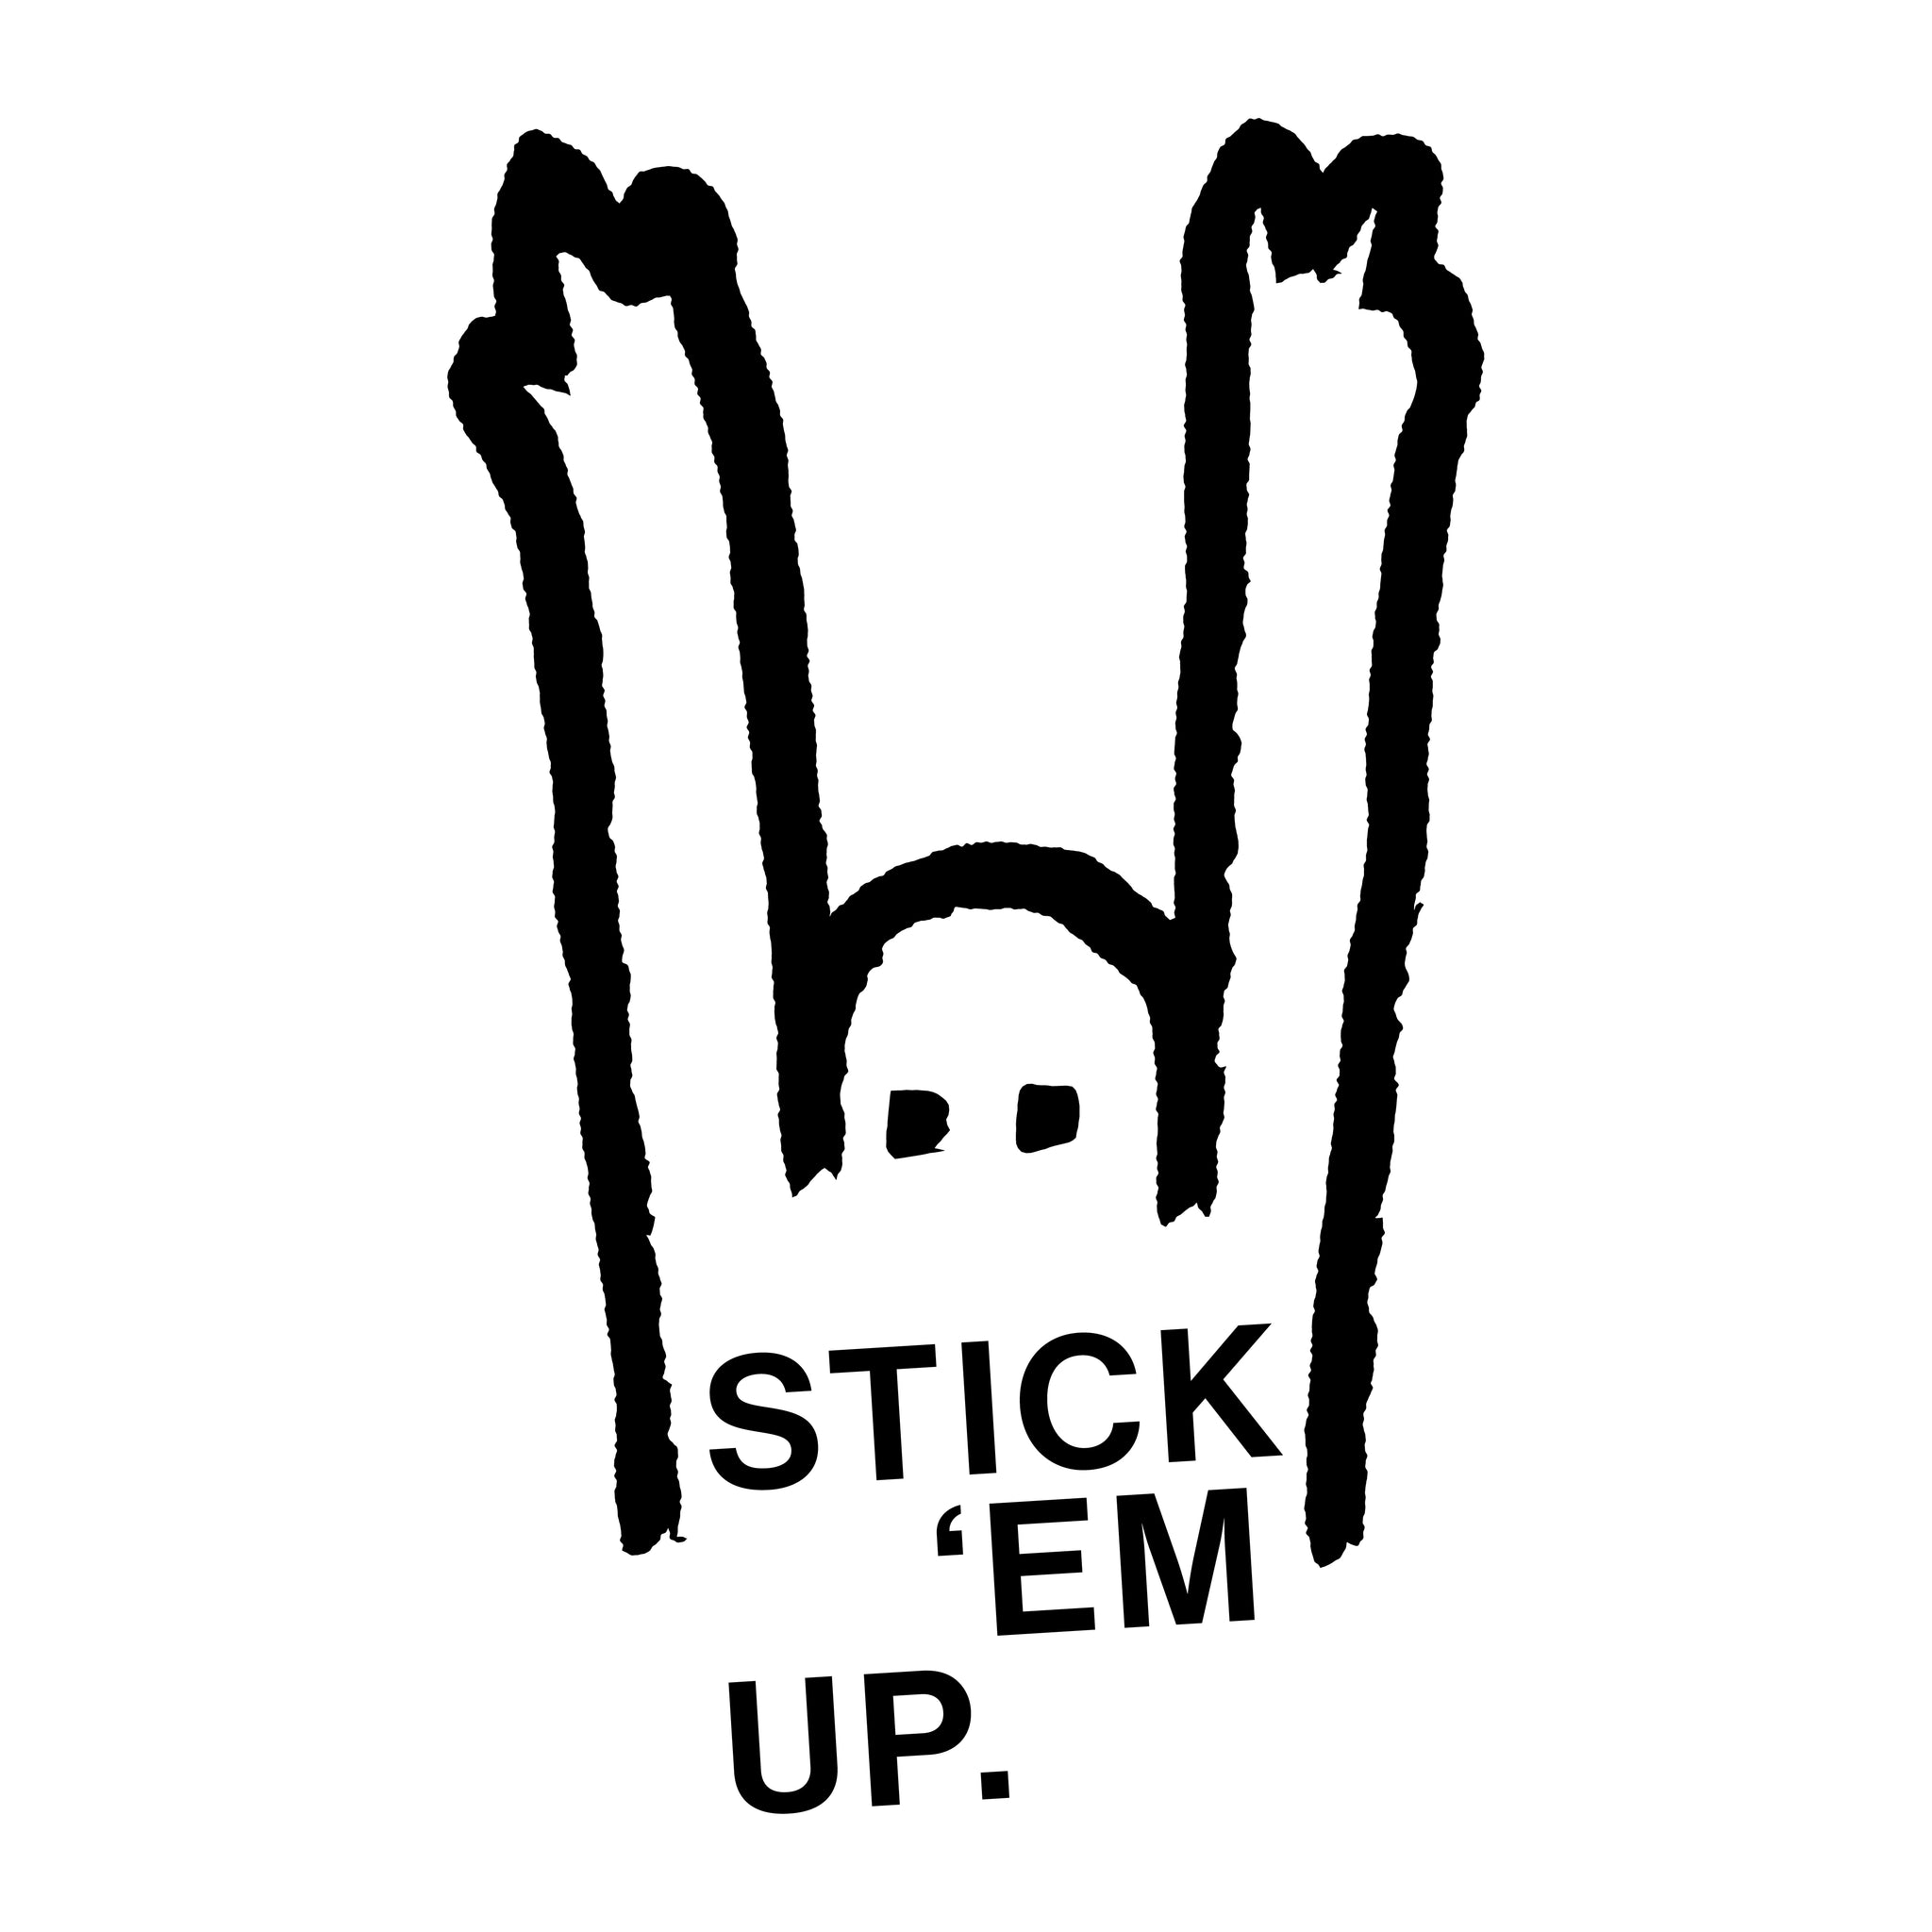 Stick 'Em Up!